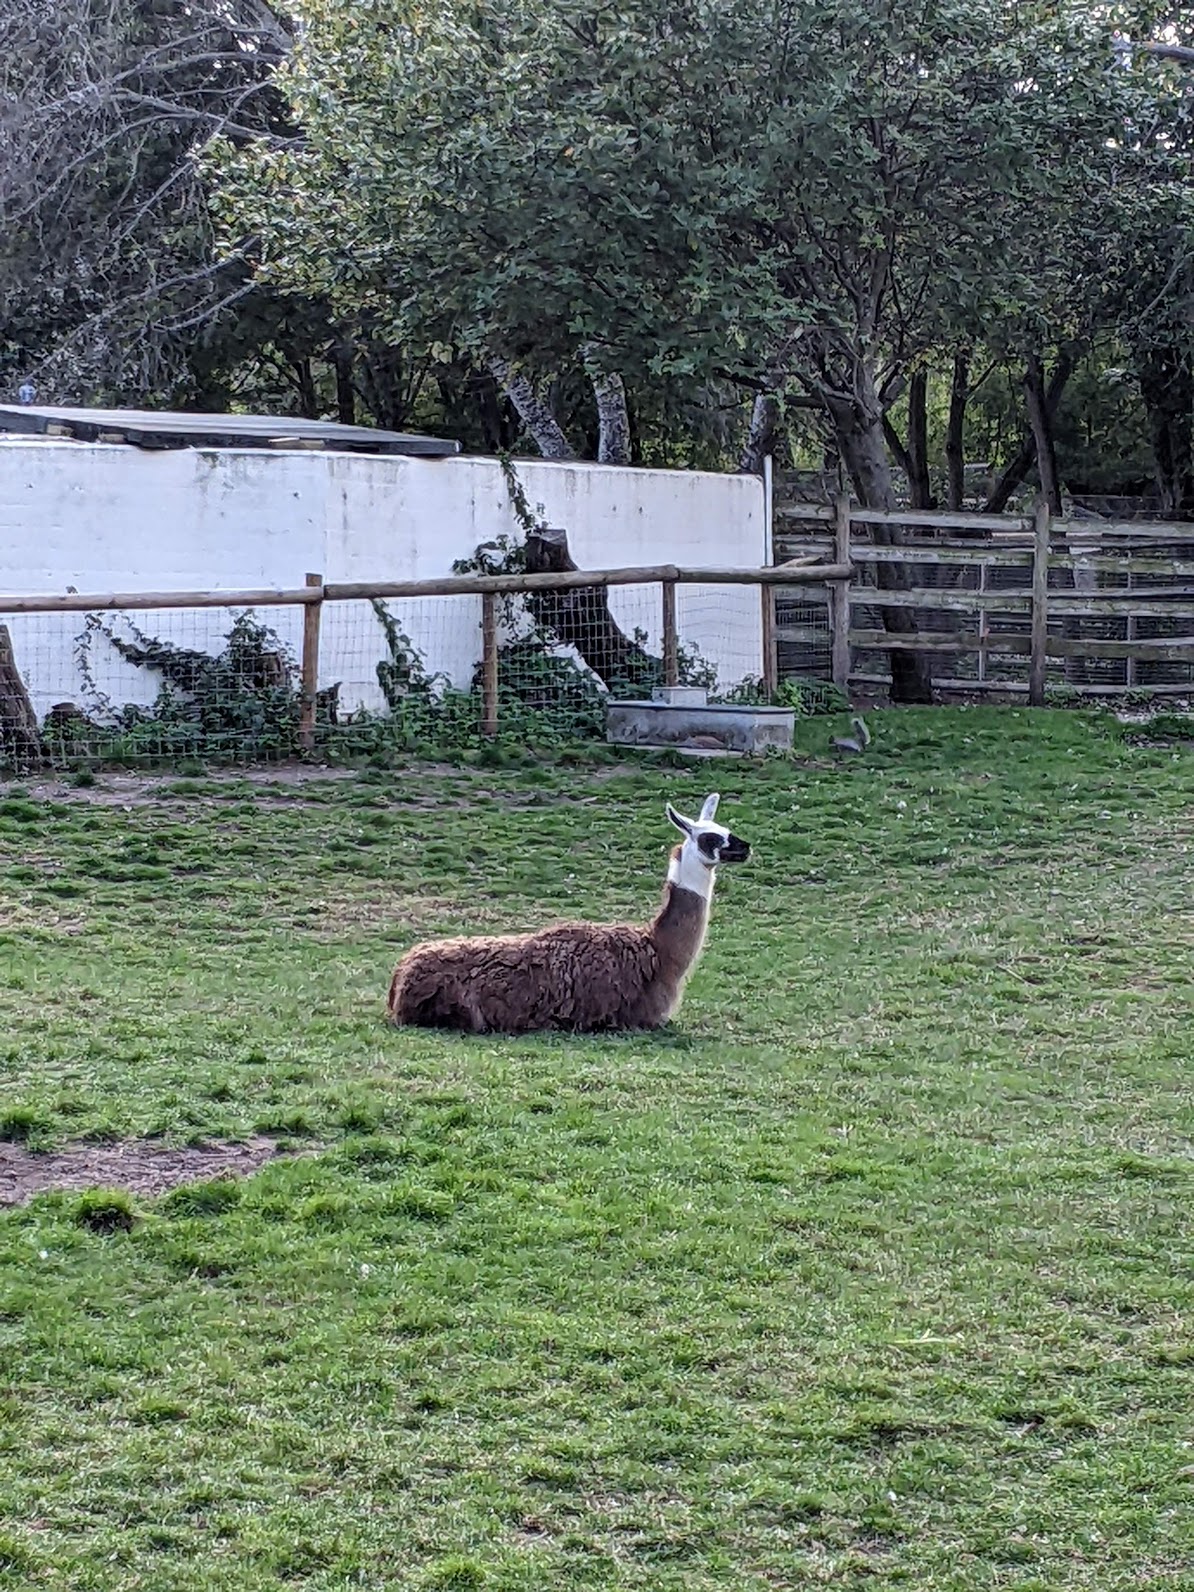 llama at mudchute farm